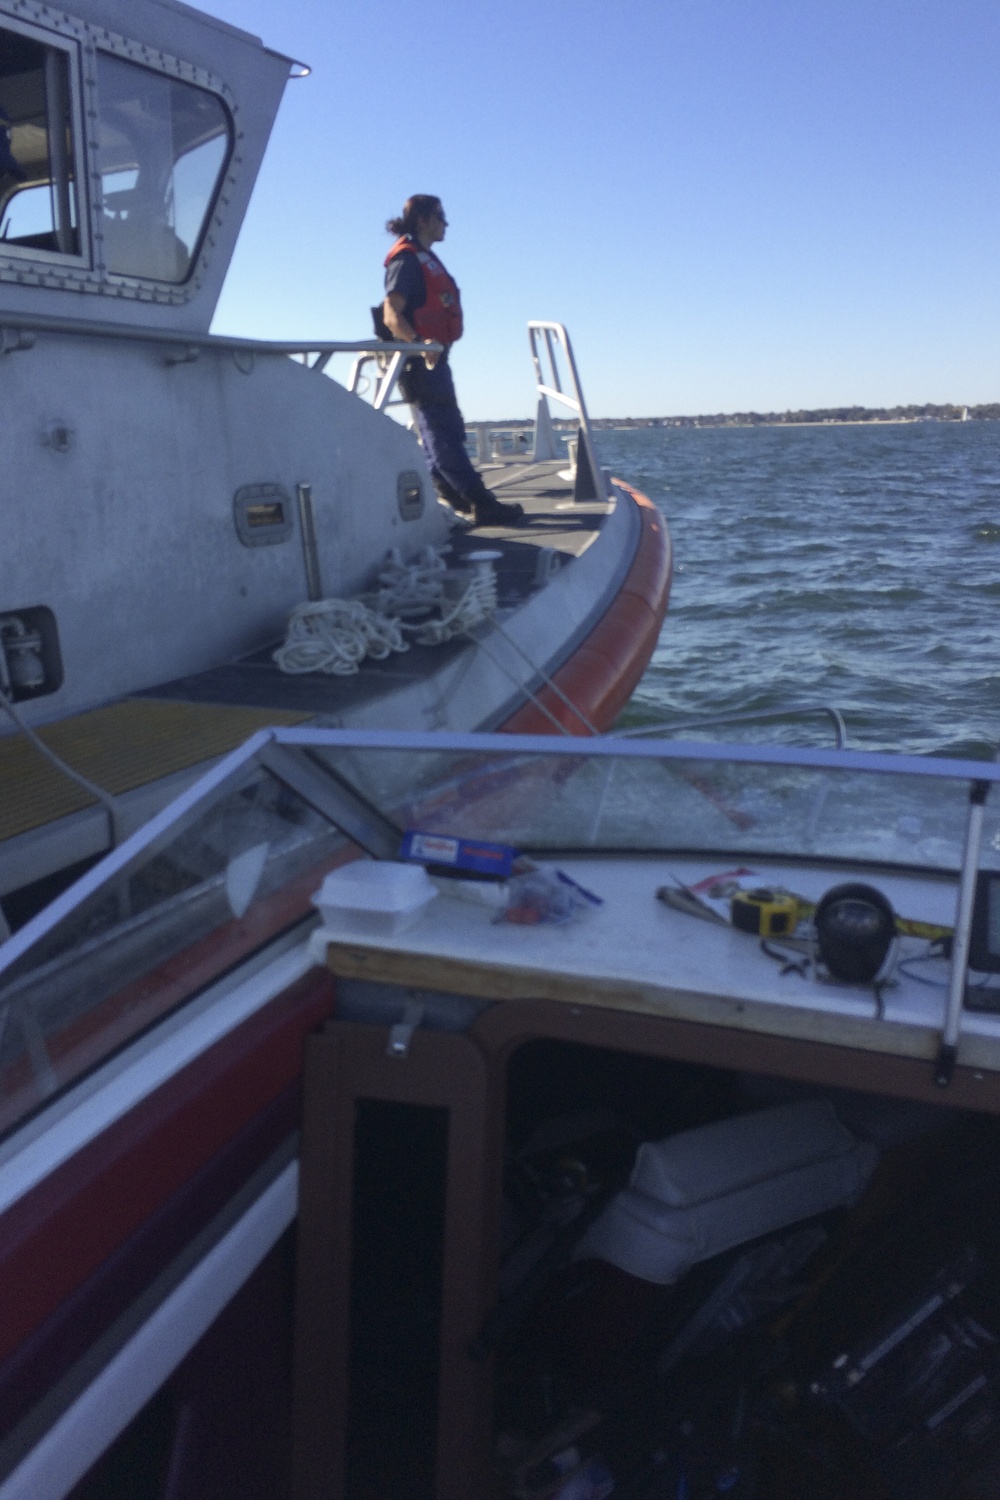 Coast Guard assists 3 aboard vessel taking on water near Pine Island, Conn.